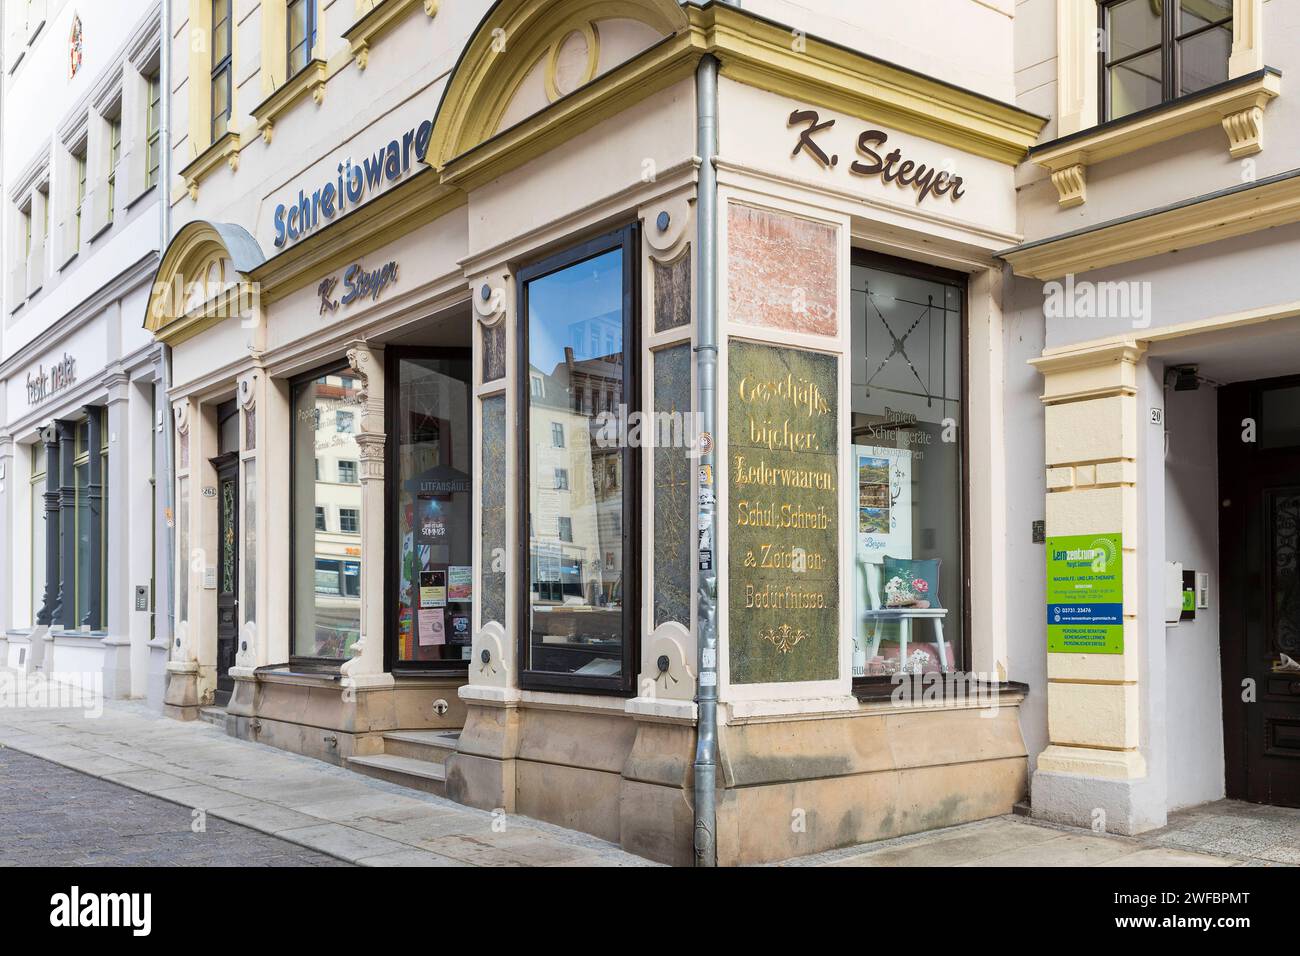 historische Fassade von einem Schreibwarengeschäft am Obermarkt, Freiberg, Sachsen, Deutschland *** historic facade of a stationery store on the Oberm Stock Photo